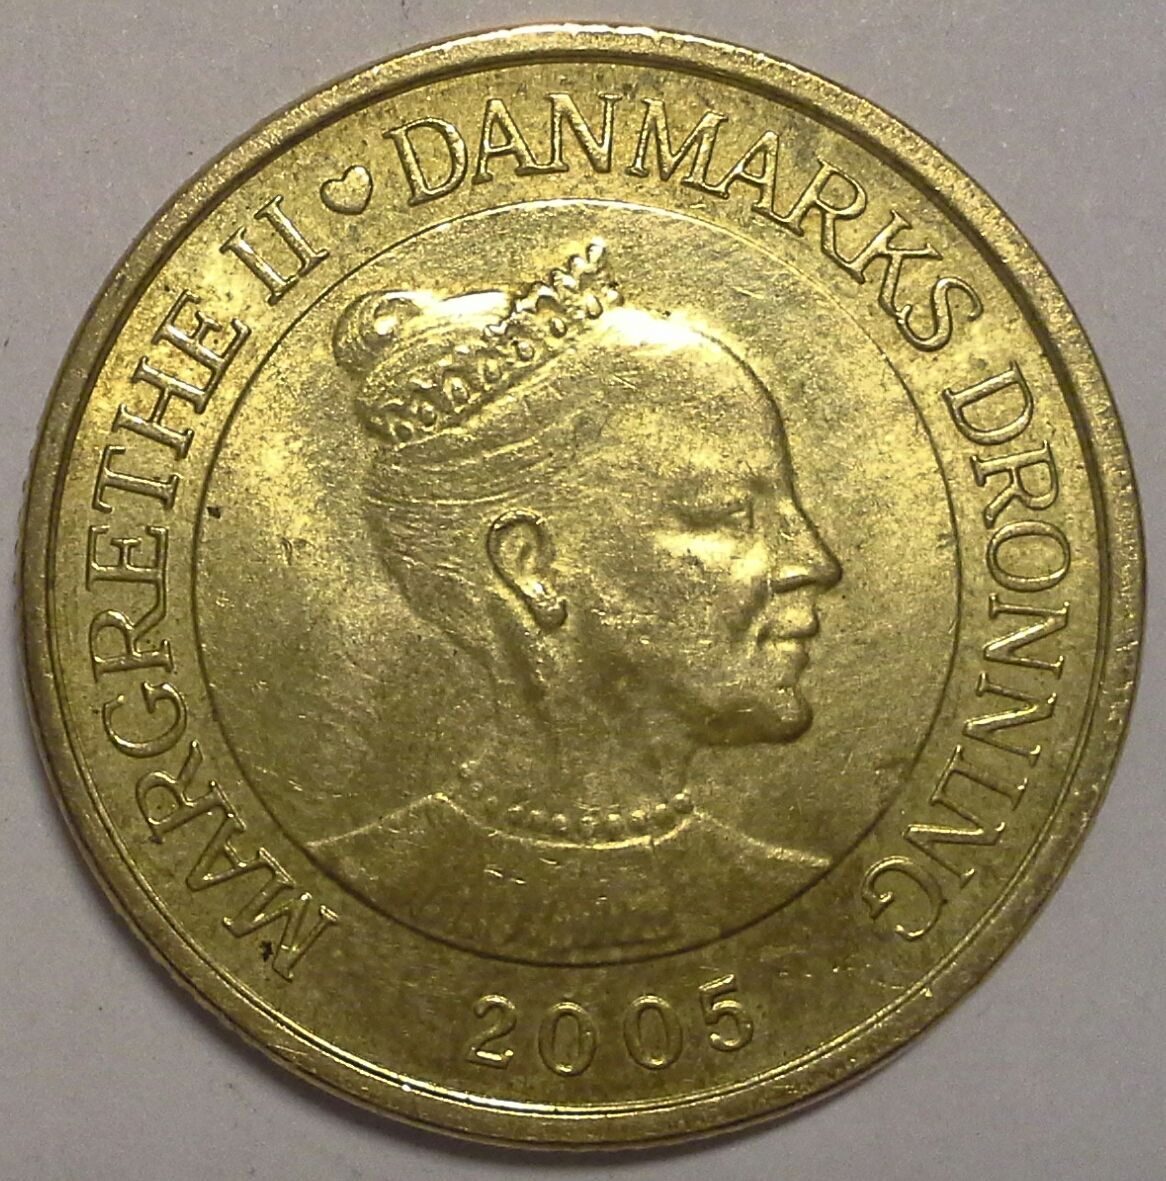 Дания 20 крон 2005